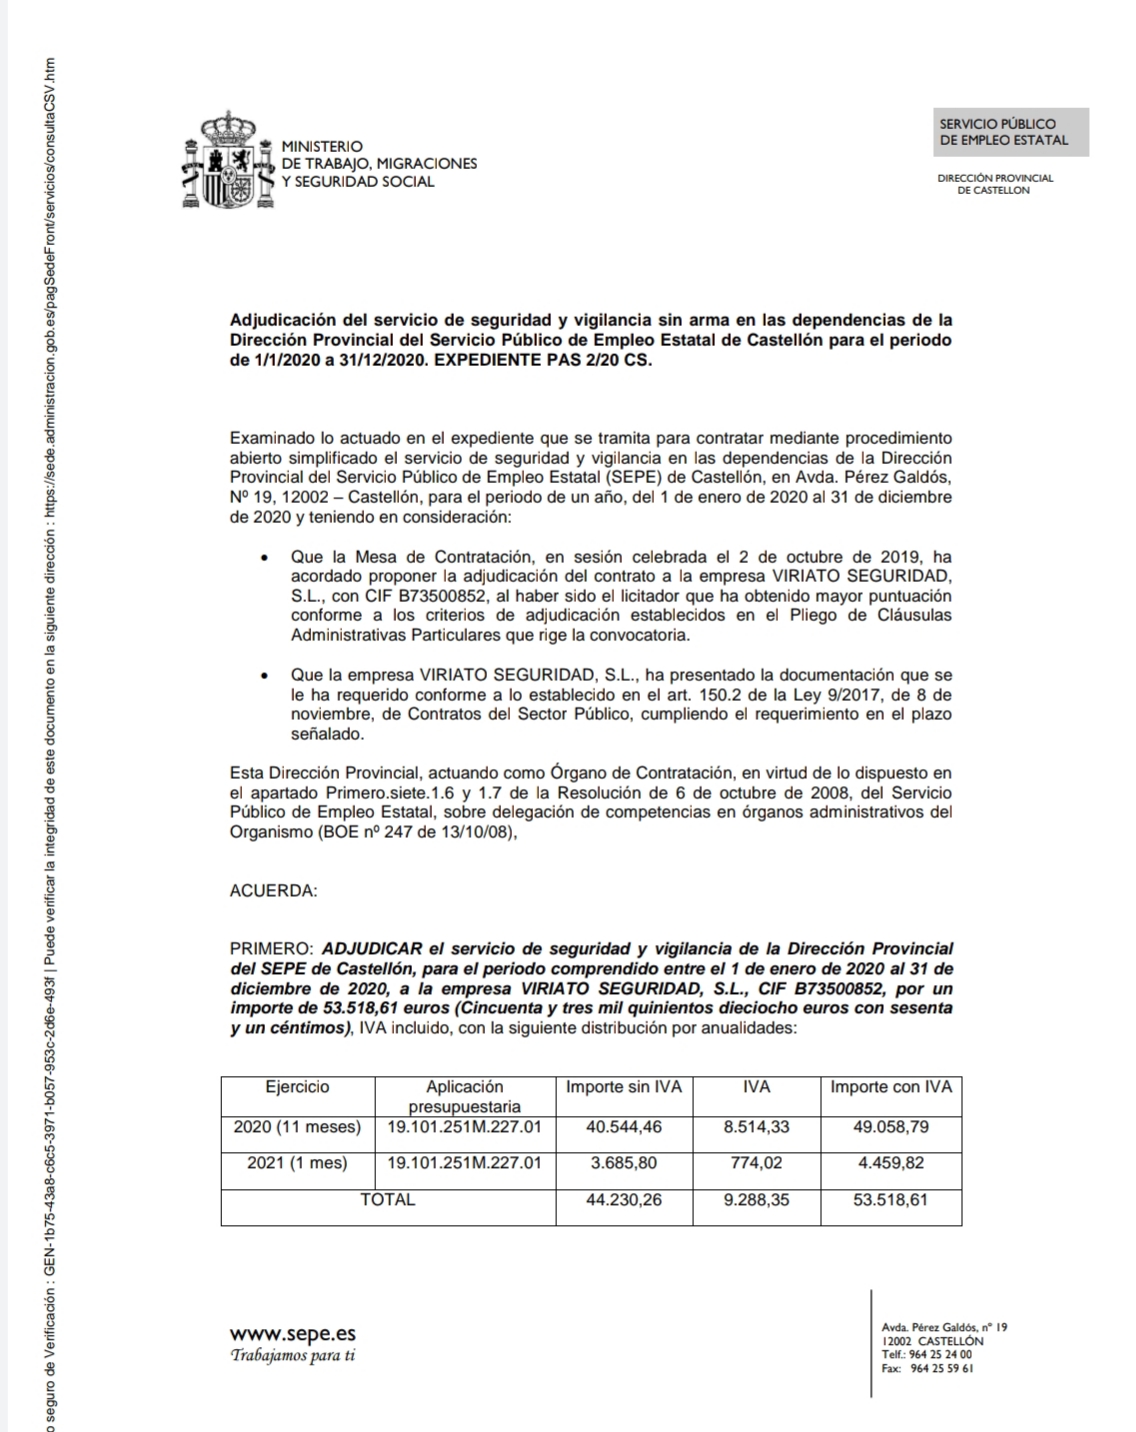 Adjudicado el Servicio de Vigilancia en las dependencias de la Dirección Provincial del Servicio Público de Empleo Estatal de Castellón